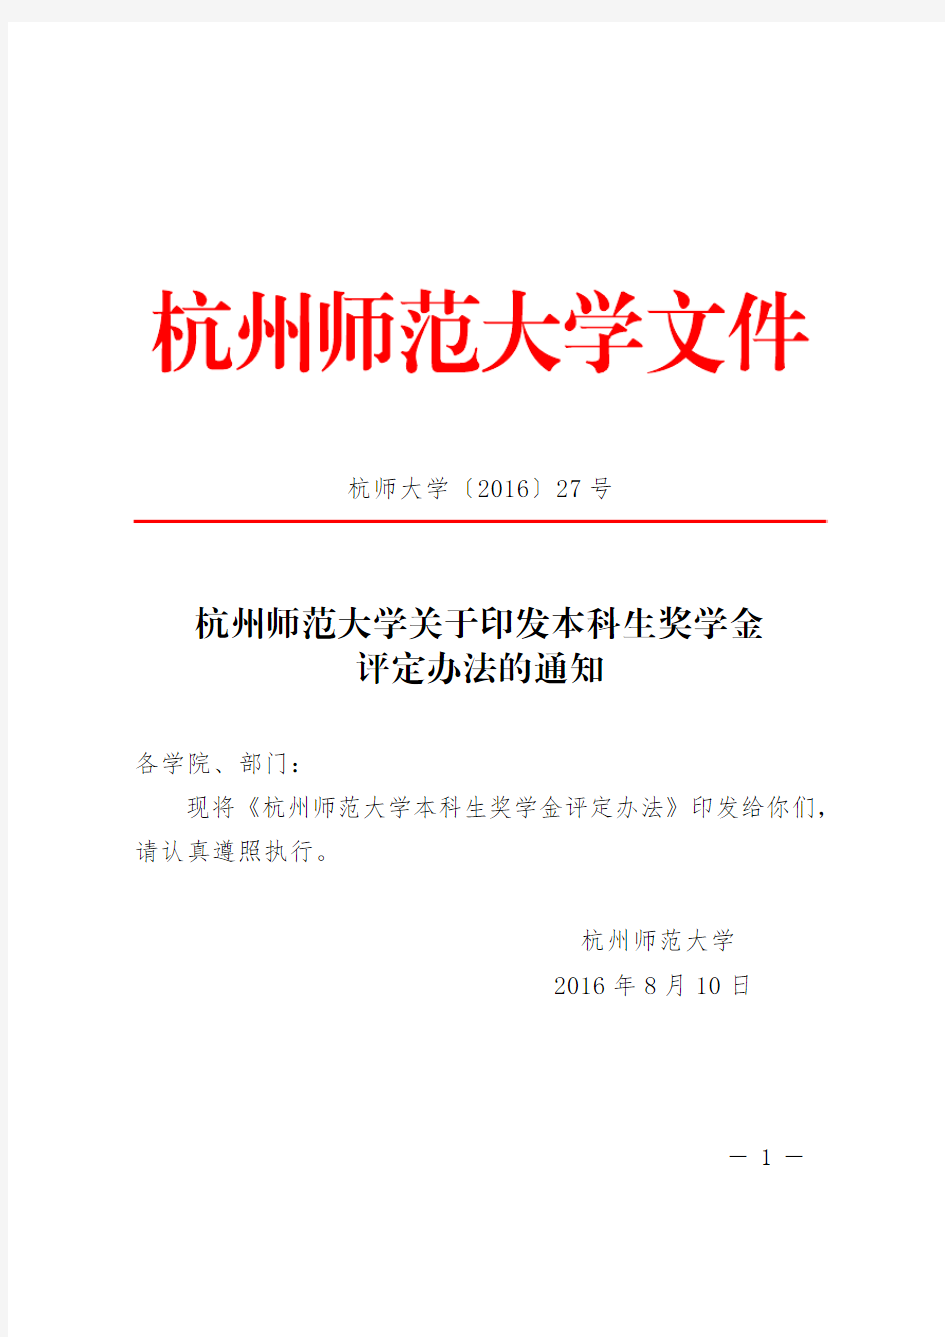 杭州师范大学关于印发本科生奖学金评定办法的通知